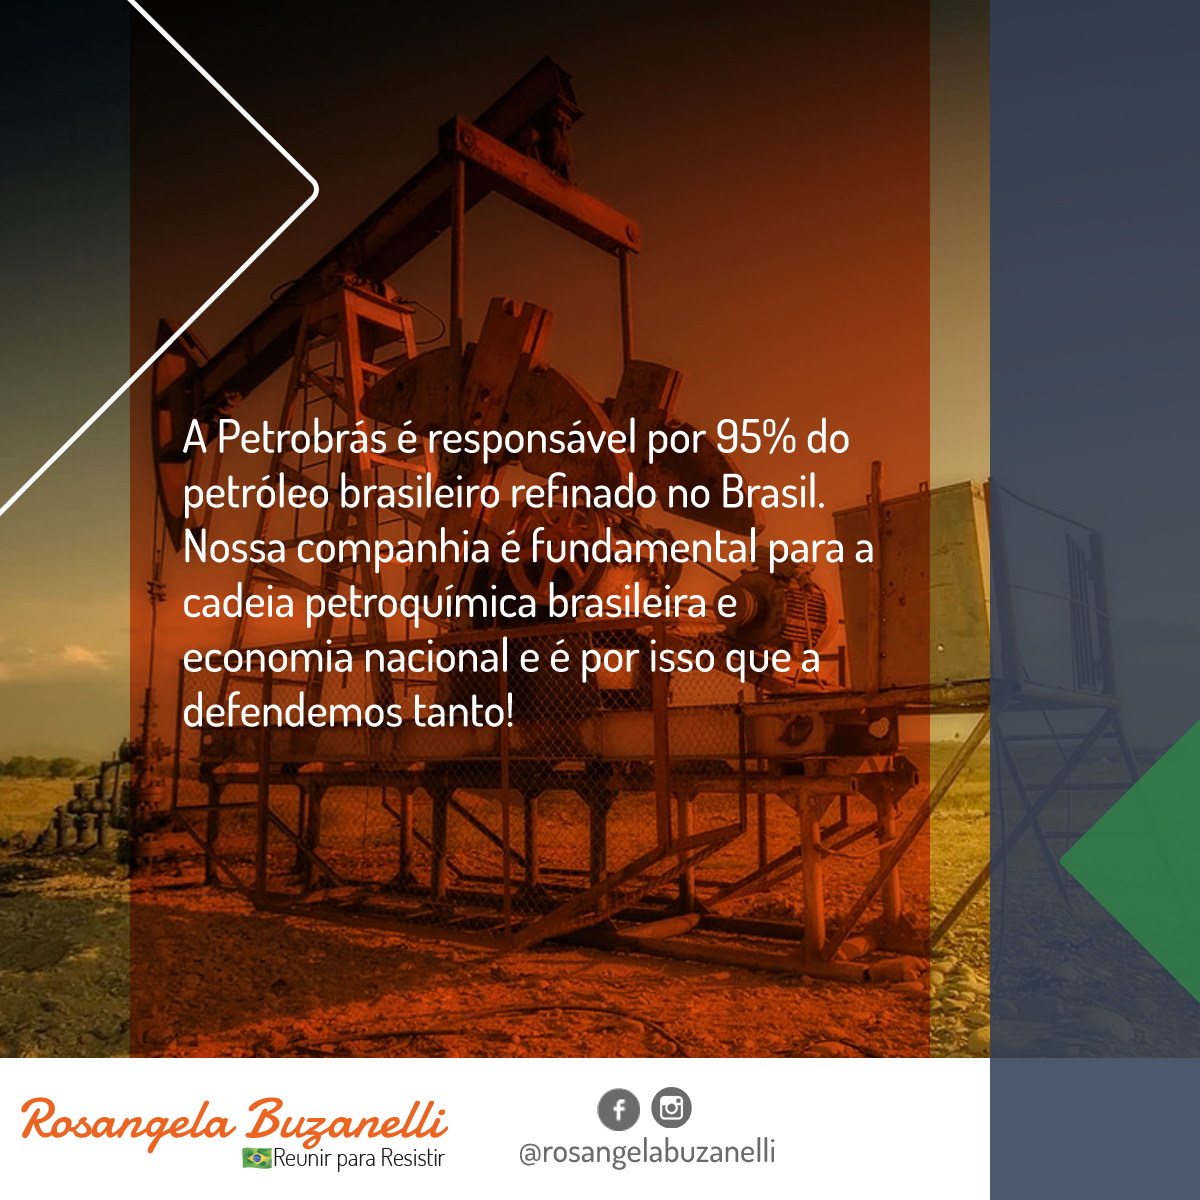 A Petrobrás é responsável por 95% do petróleo brasileiro refinado no Brasil